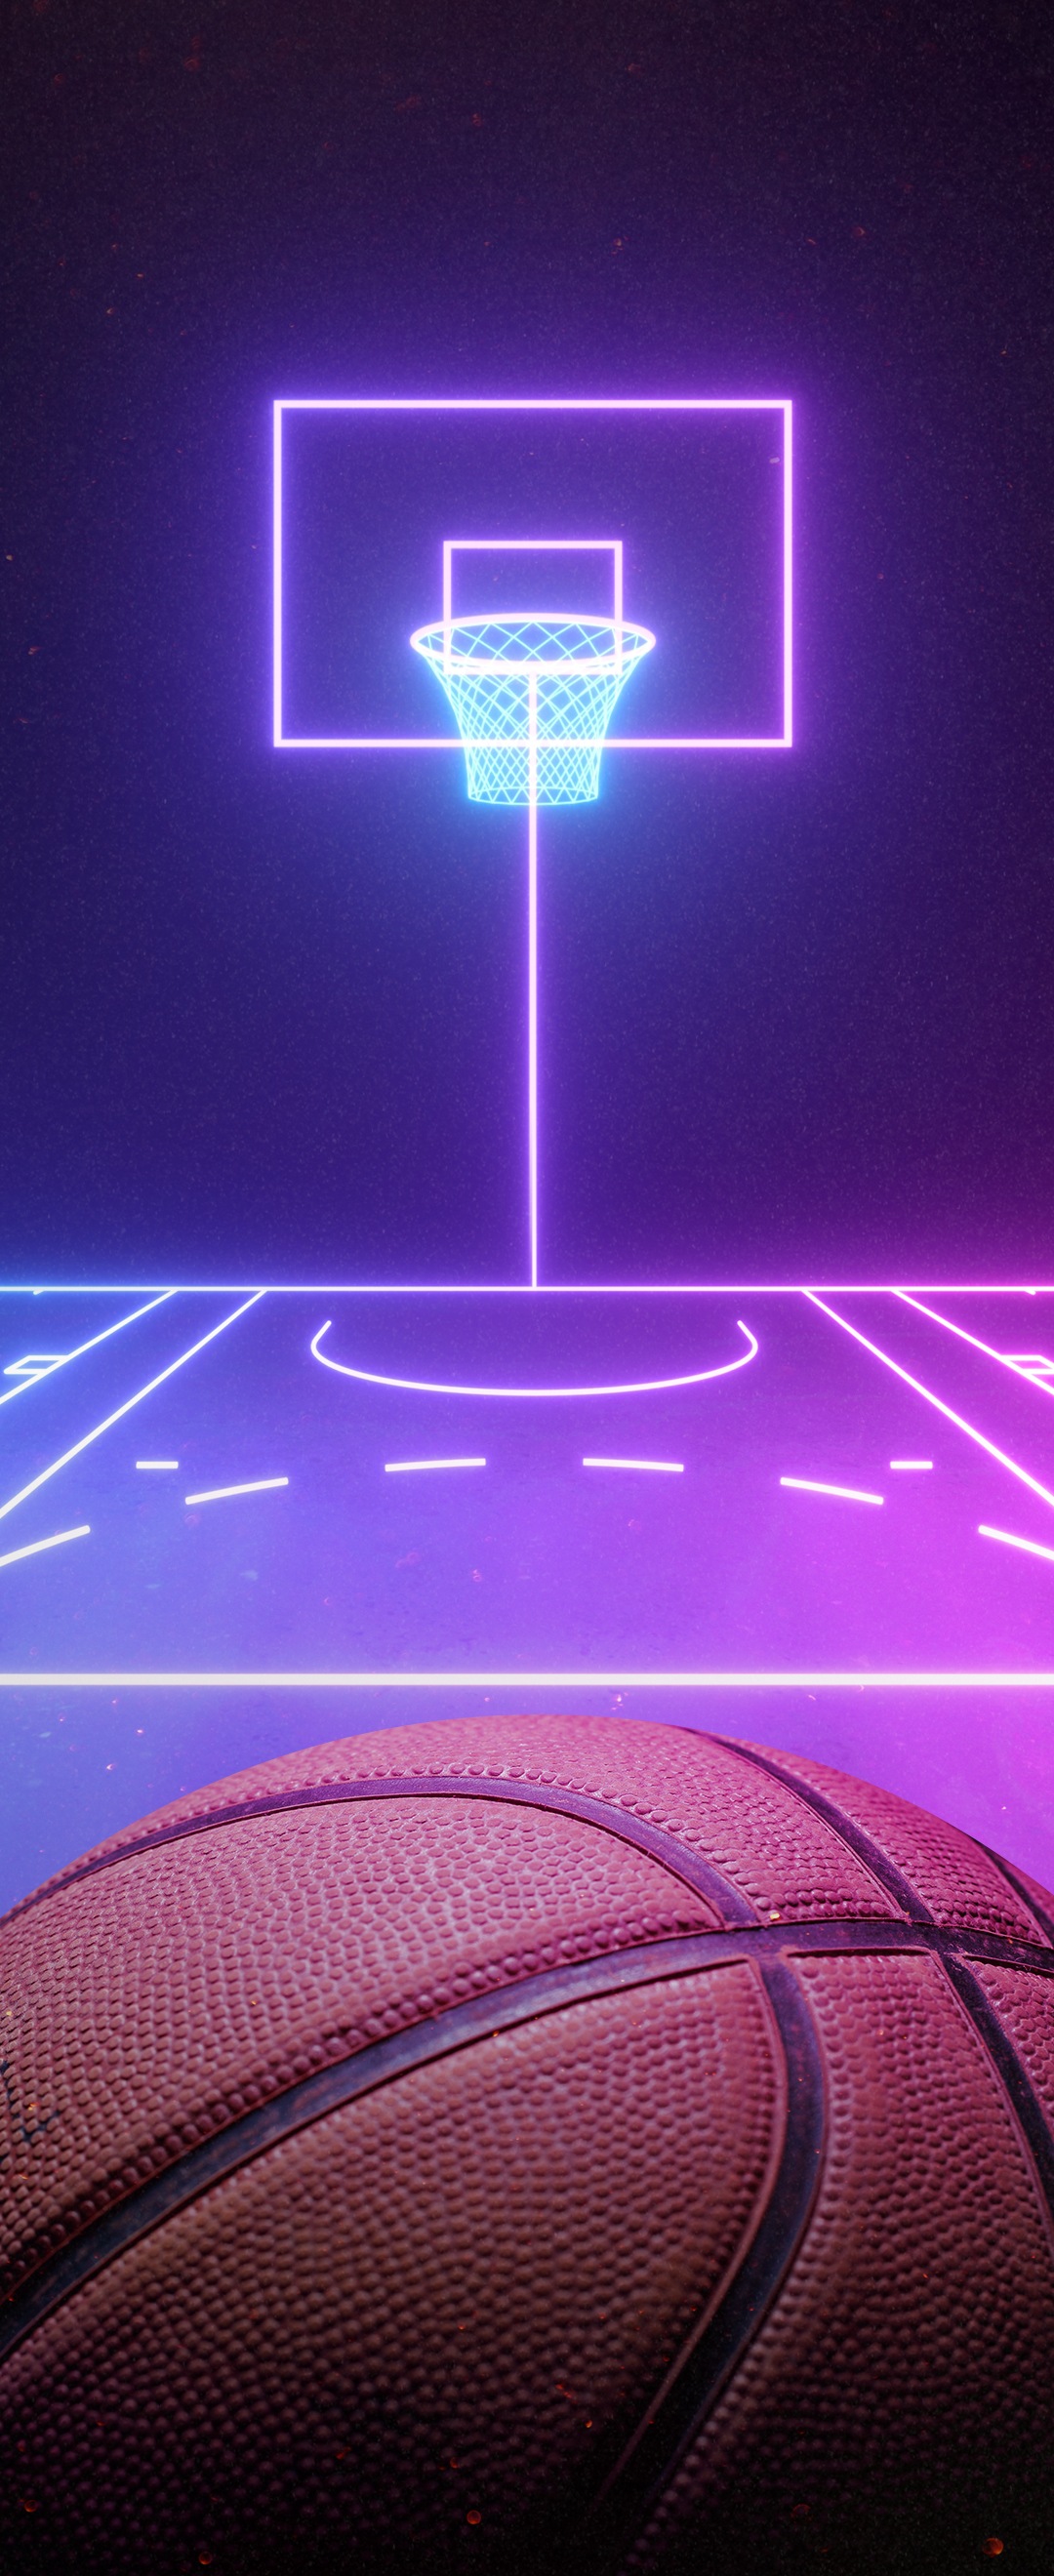 Top 48+ imagen celular fondos de pantalla de basquet 